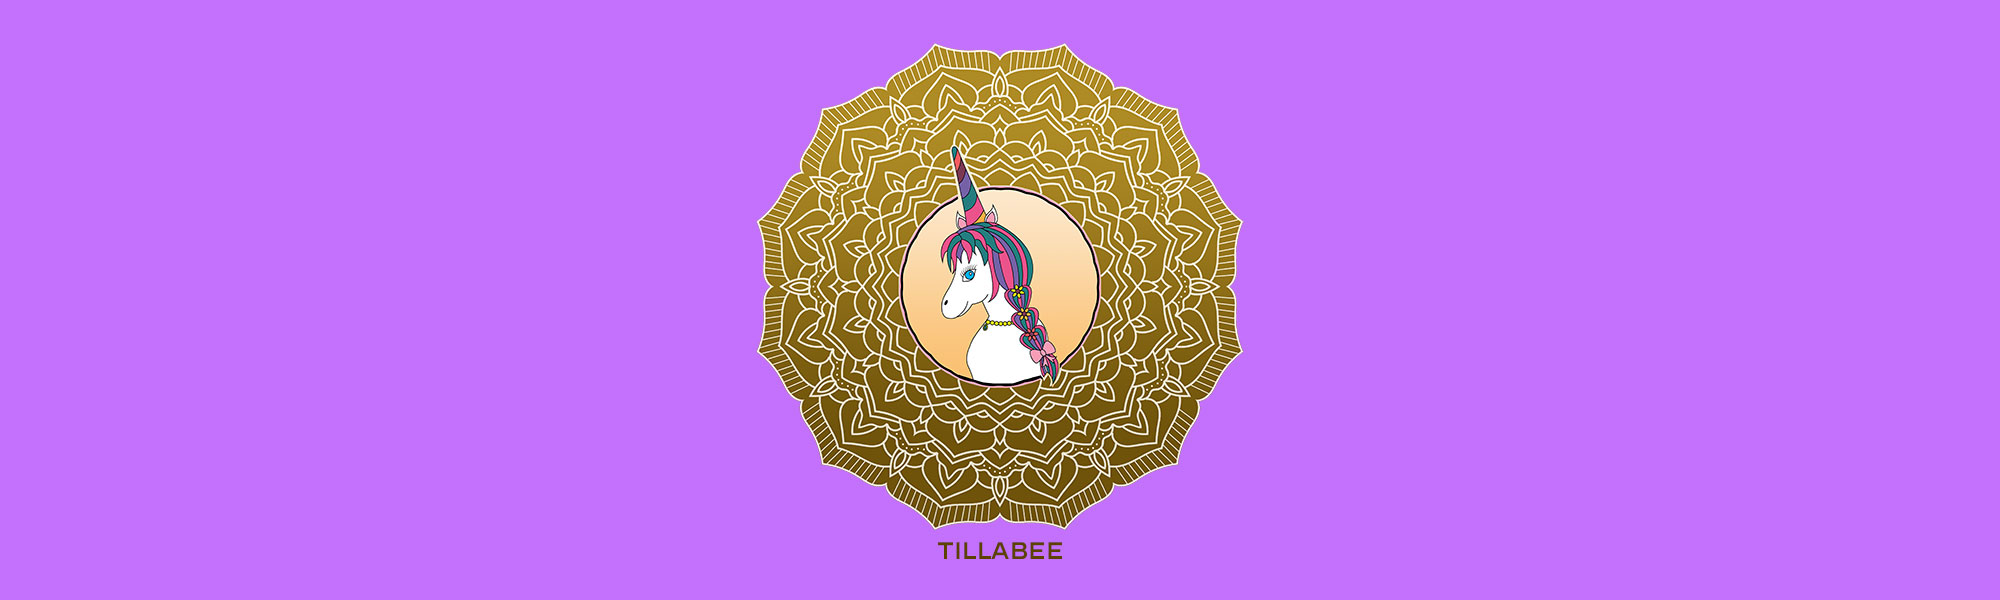 Unicorn Tillabee